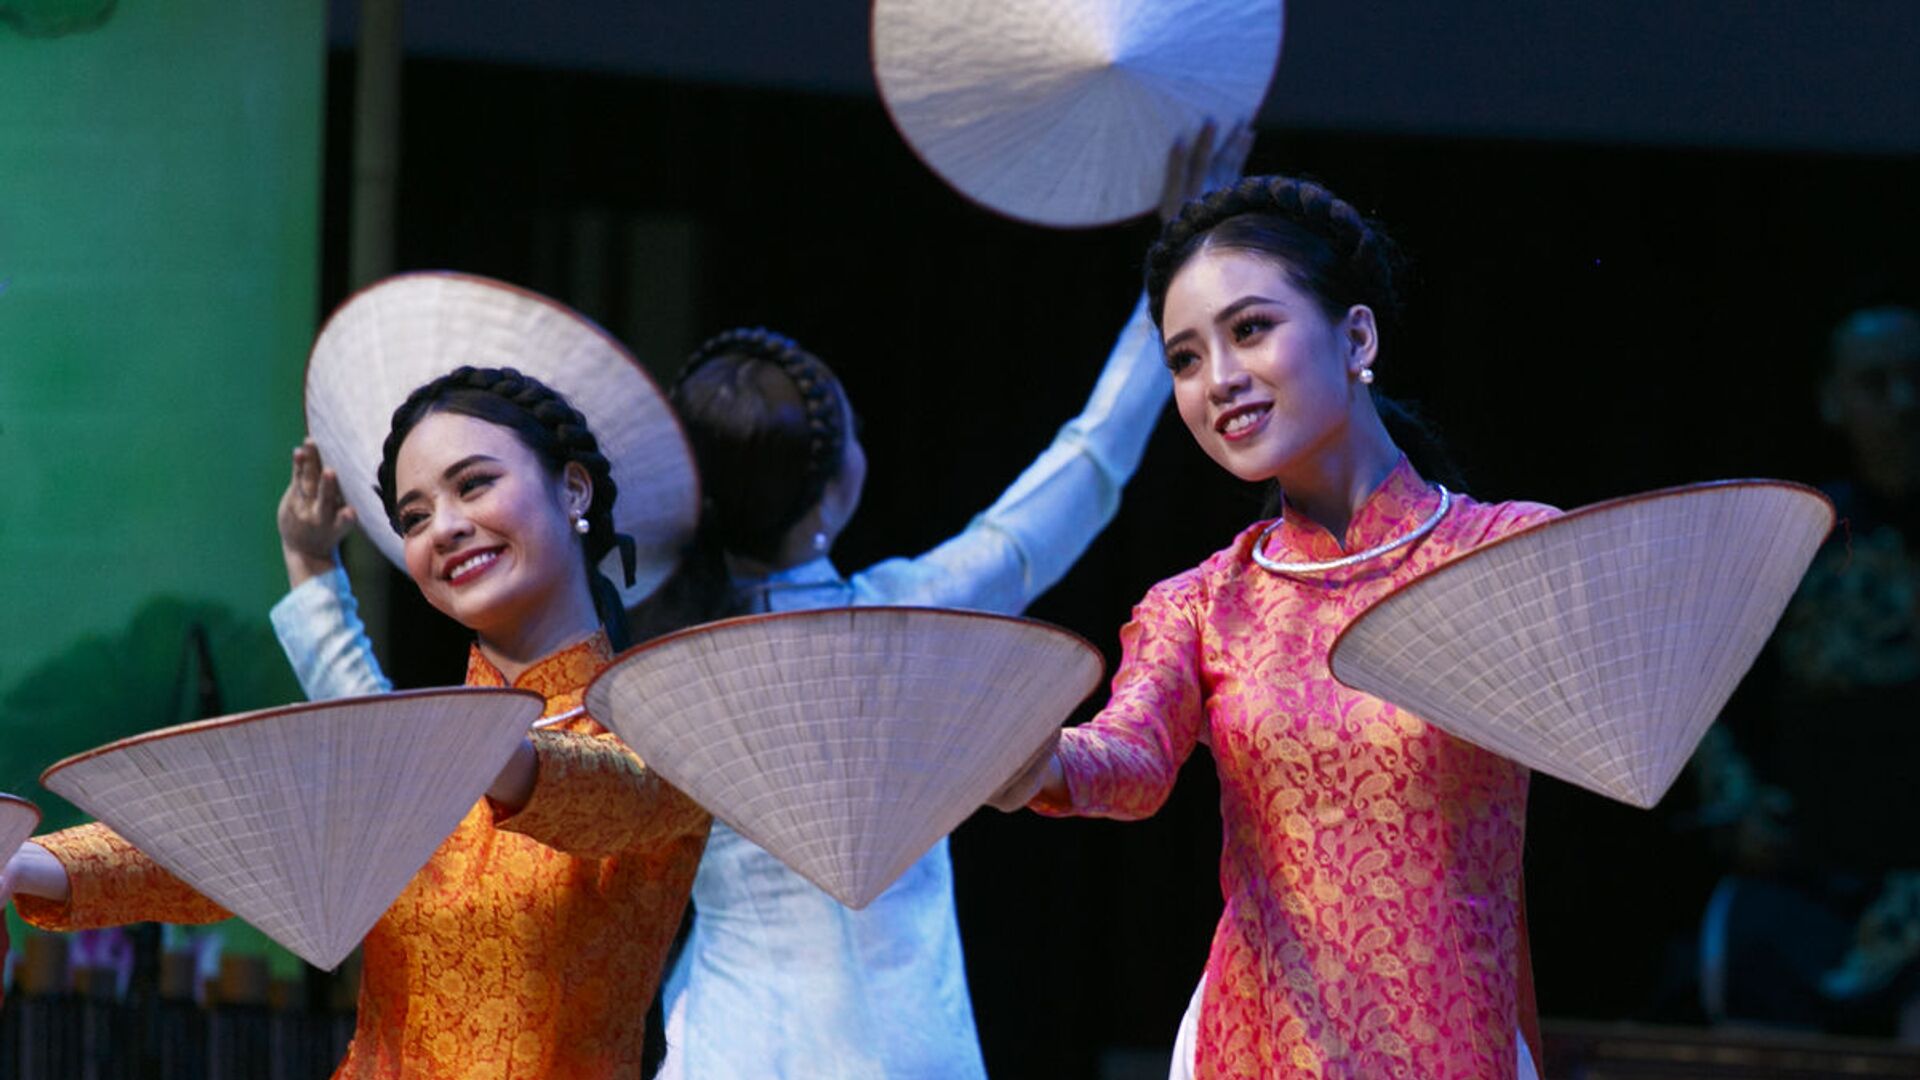 Tiết mục biểu diễn của các nghệ sĩ Việt Nam tại chương trình ca nhạc khai mạc Năm chéo hữu nghị Nga Việt - Sputnik Việt Nam, 1920, 13.06.2022